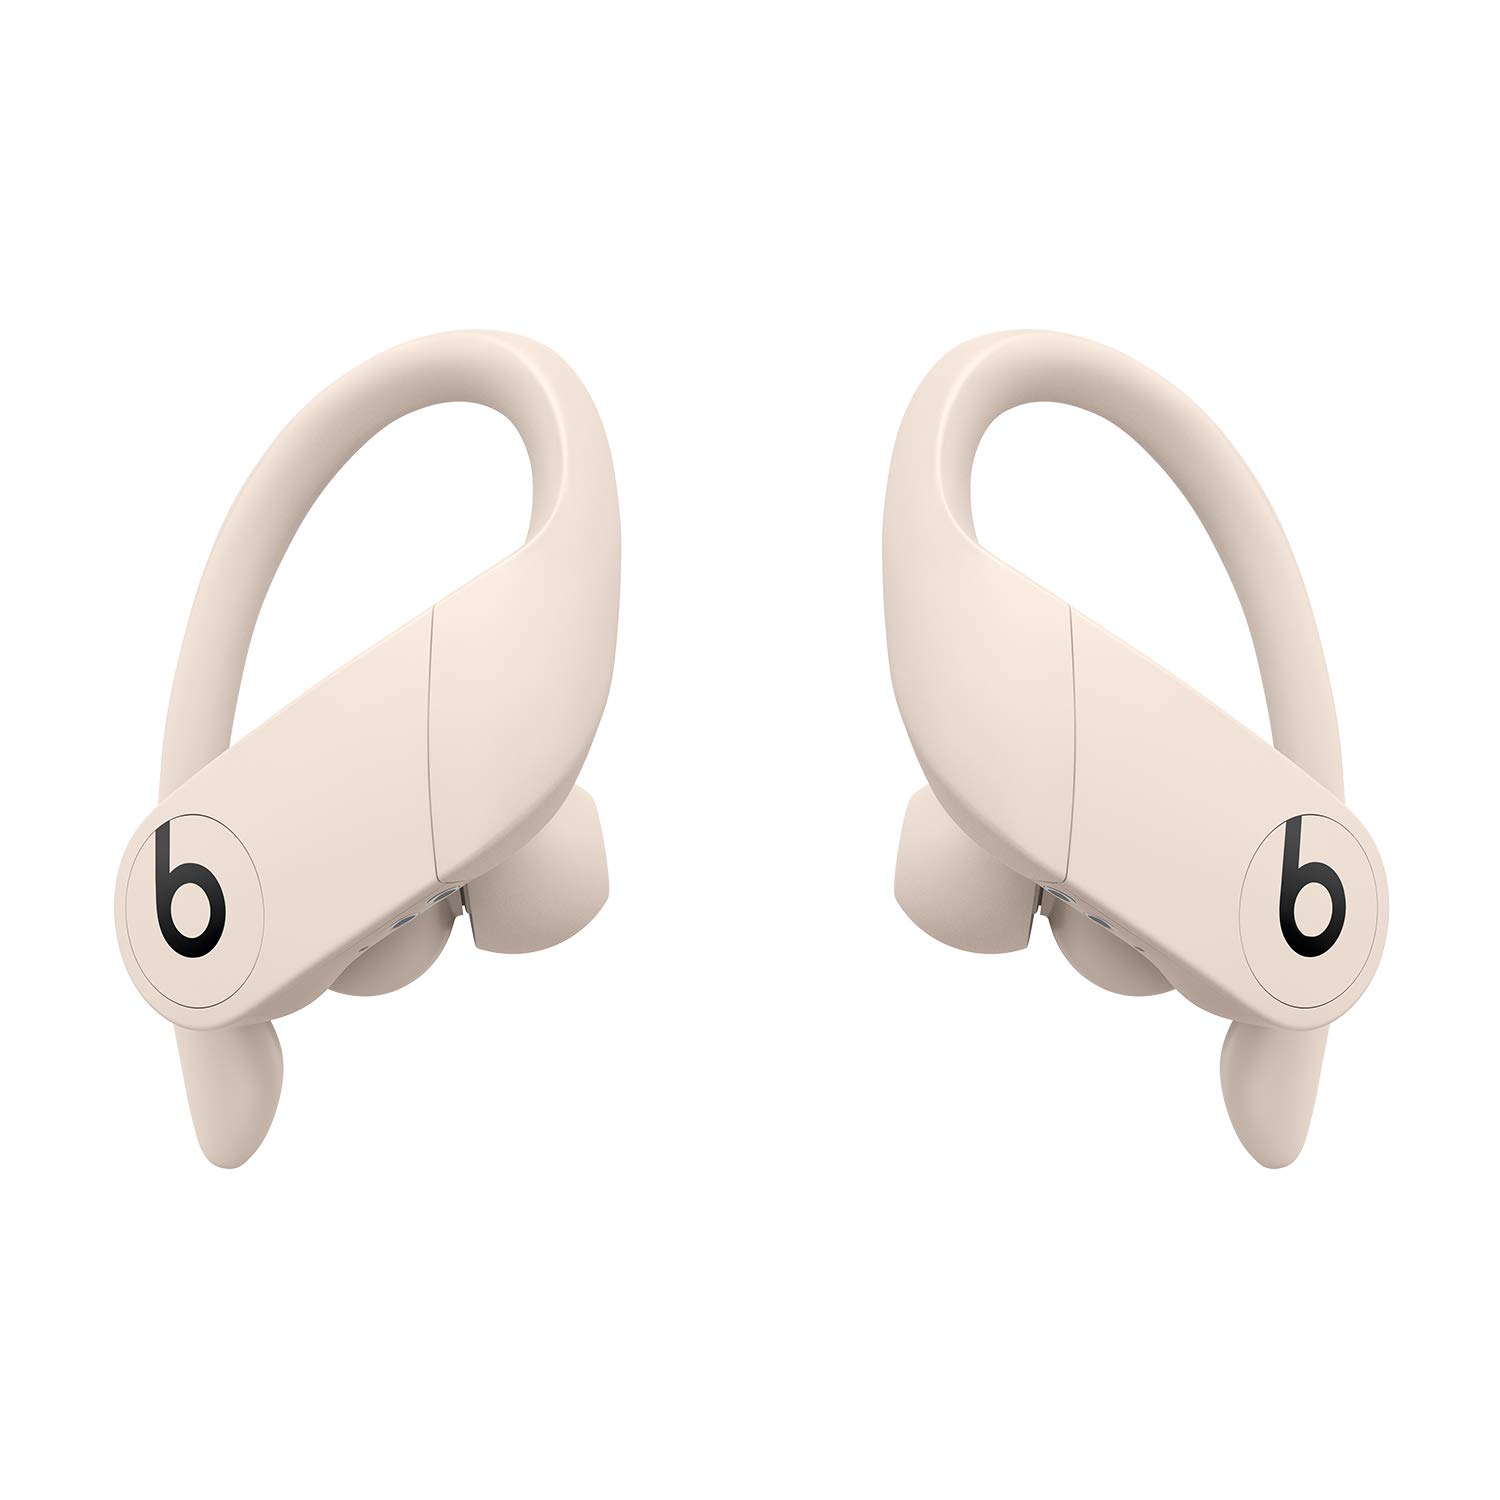 Beats Powerbeats Pro Kabellose In-Ear Bluetooth Kopfhörer – Apple H1 Chip, Bluetooth der Klasse 1, 9 Stunden Wiedergabe, schweißbeständige In-Ear Kopfhörer - Elfenbein